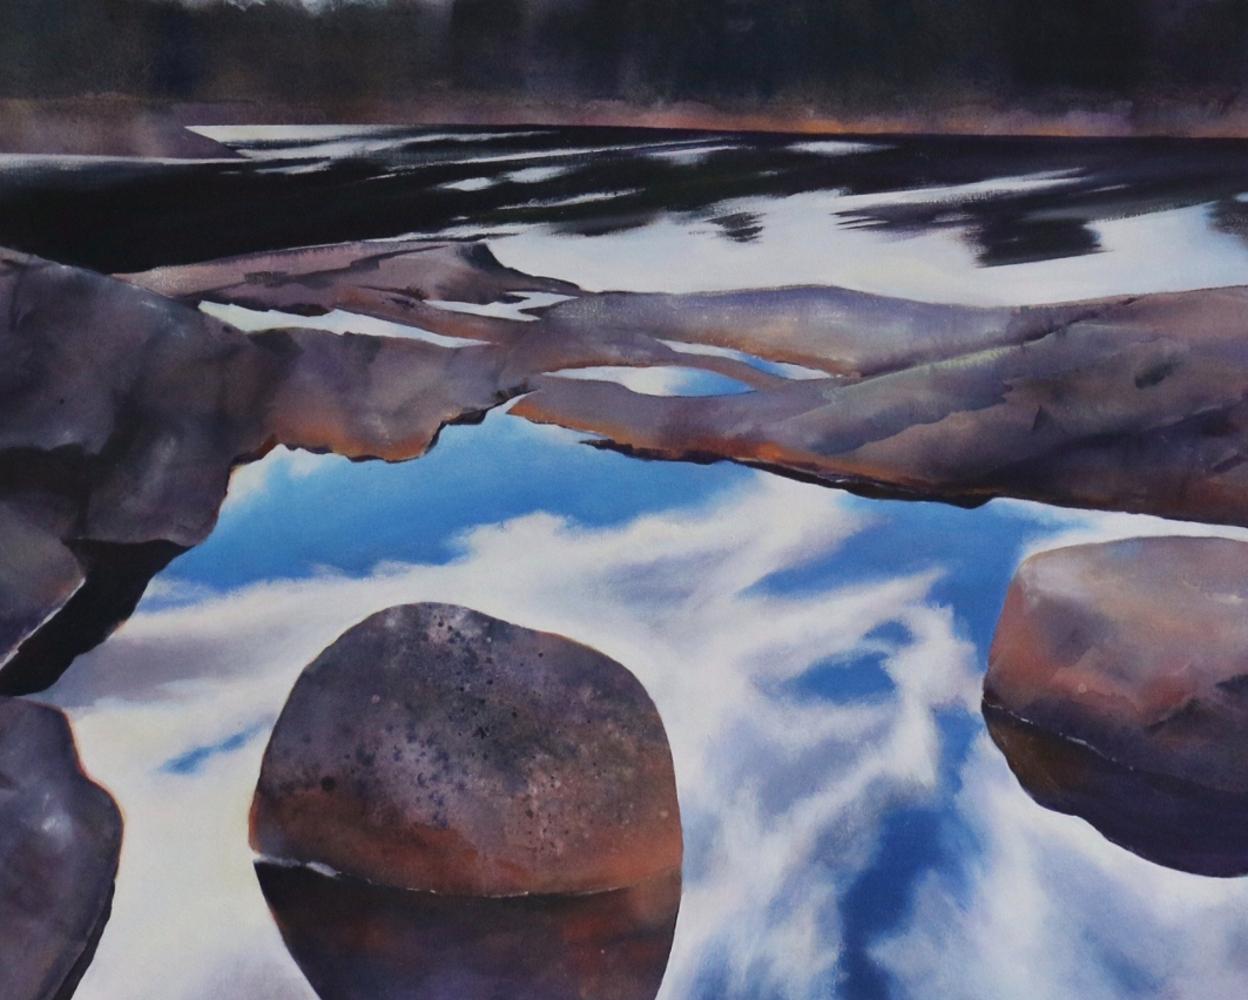 Movik II - Liminal Vista, bassin de roche norvégien : acrylique sur toile - Painting de Claire Smith